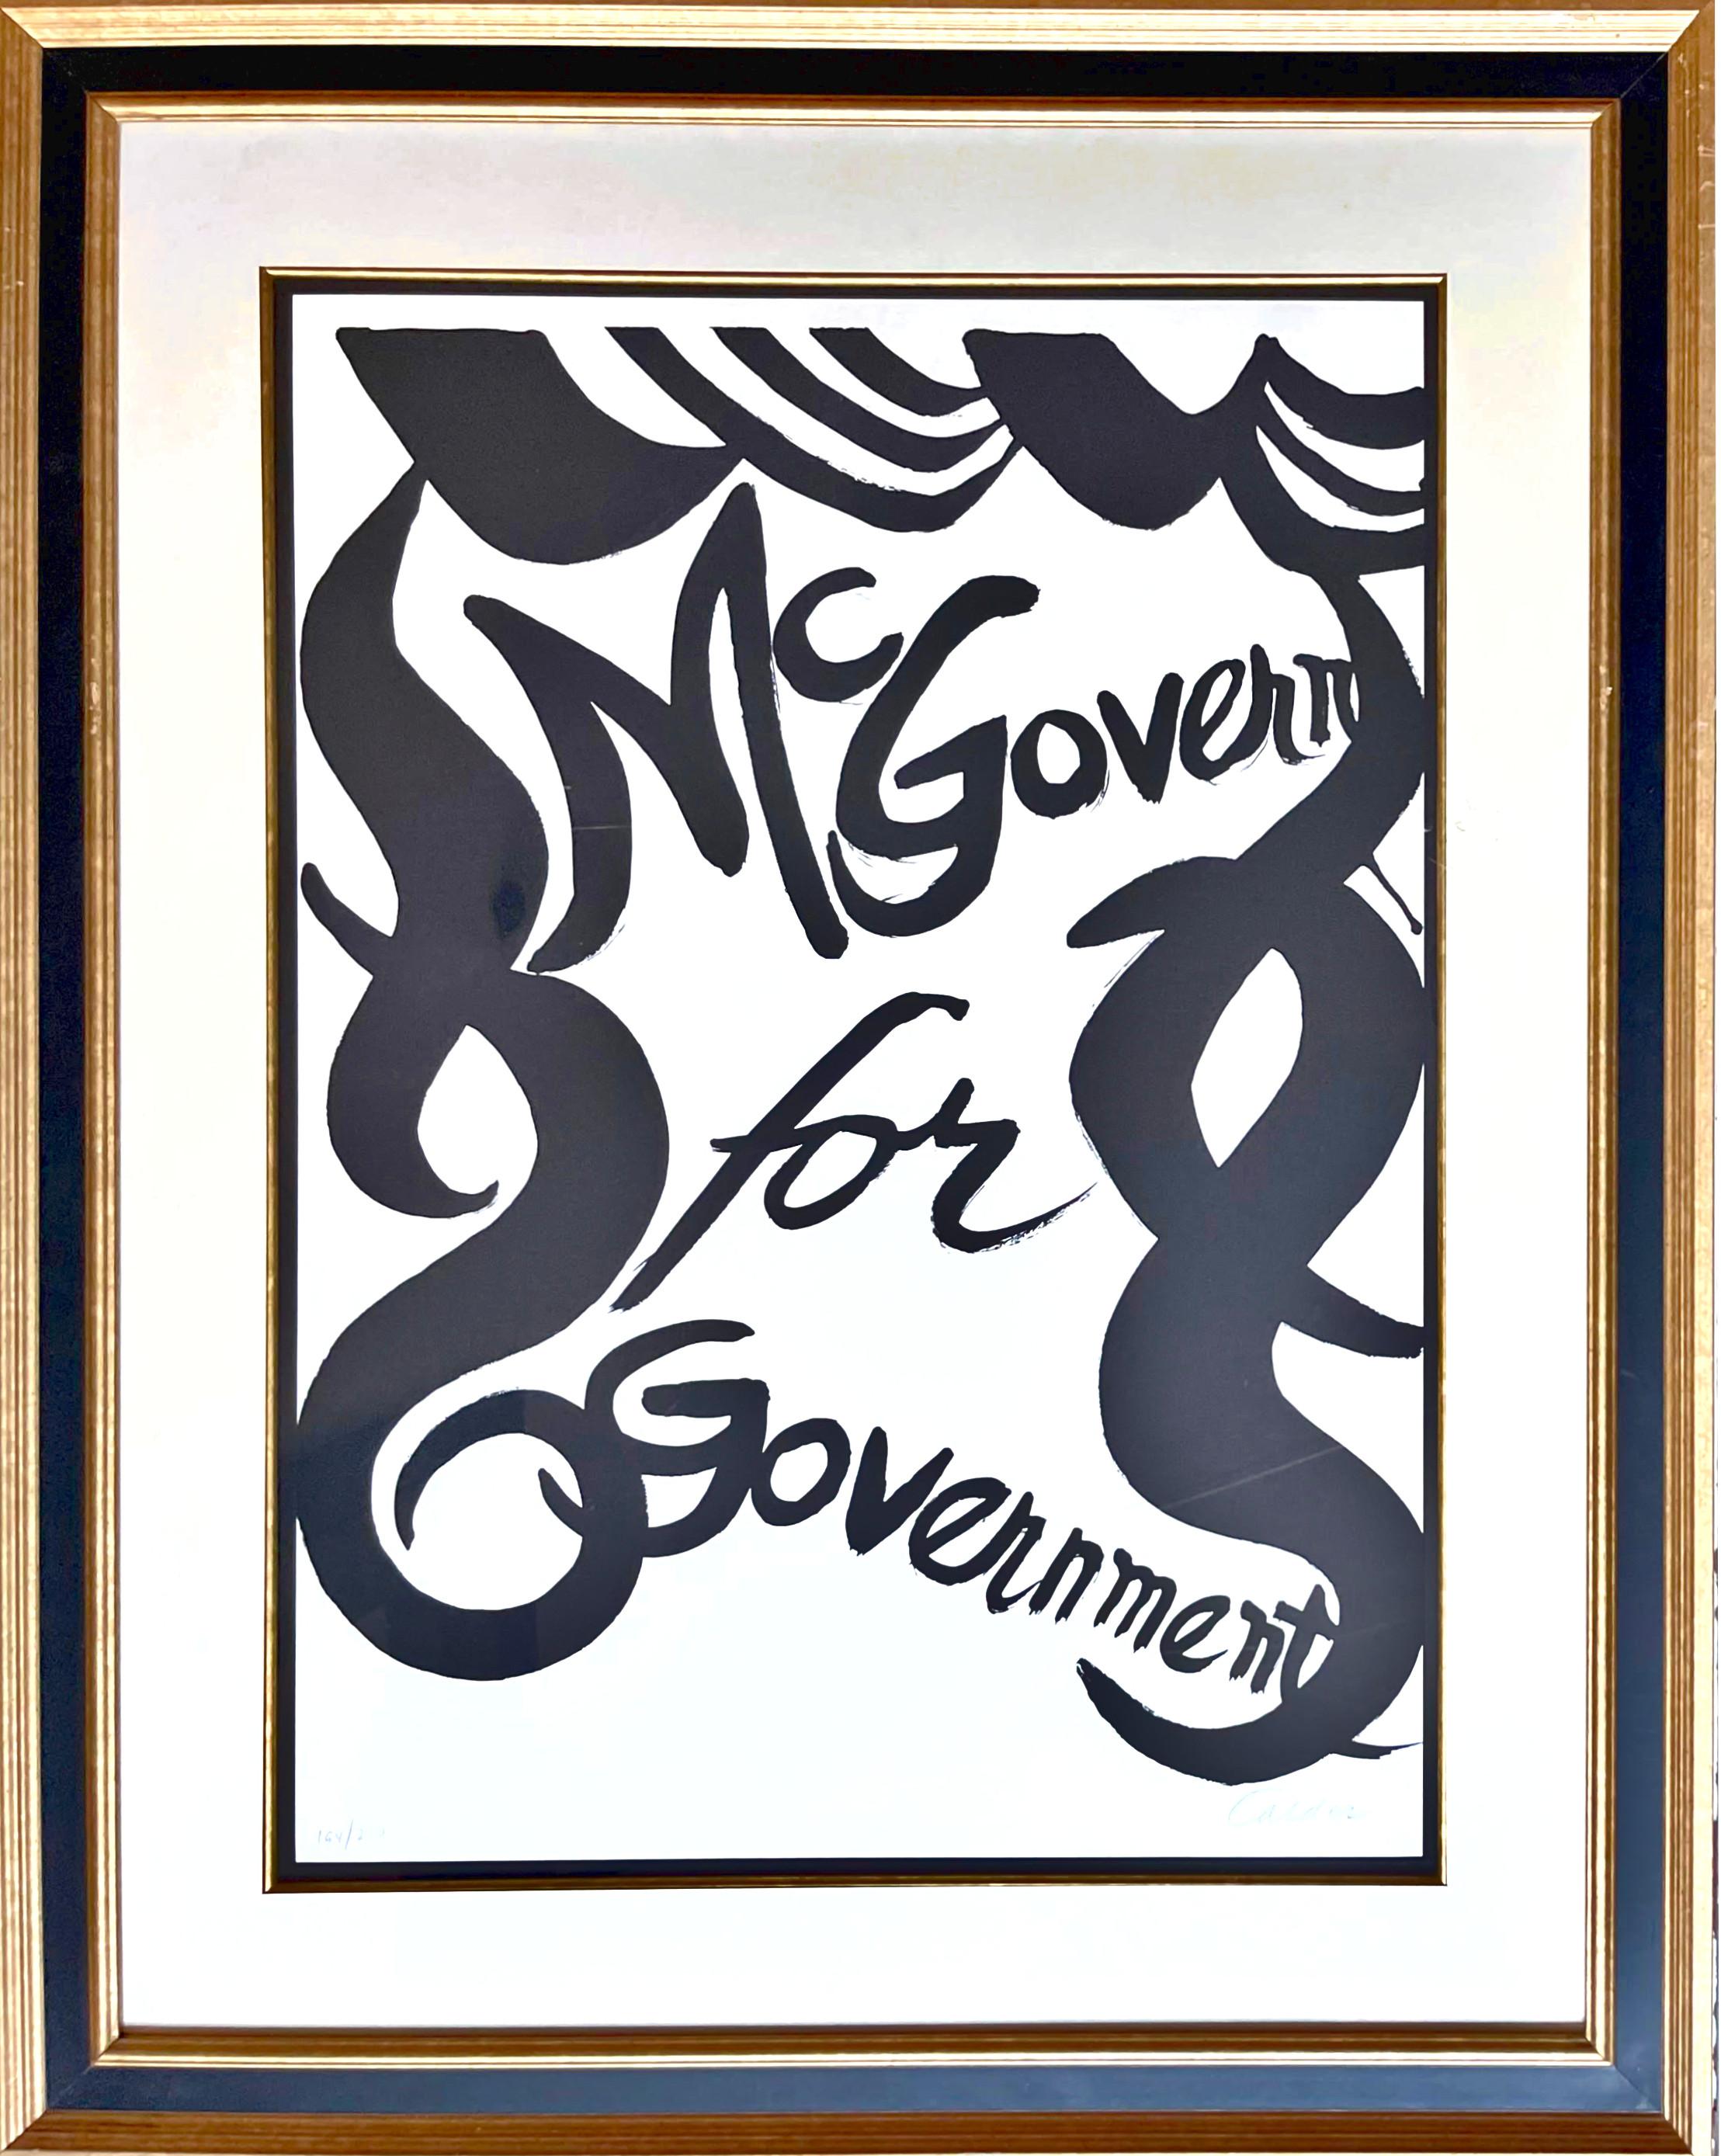 Lithographie politique McGovern pour McGovernment signée et numérotée 194/200